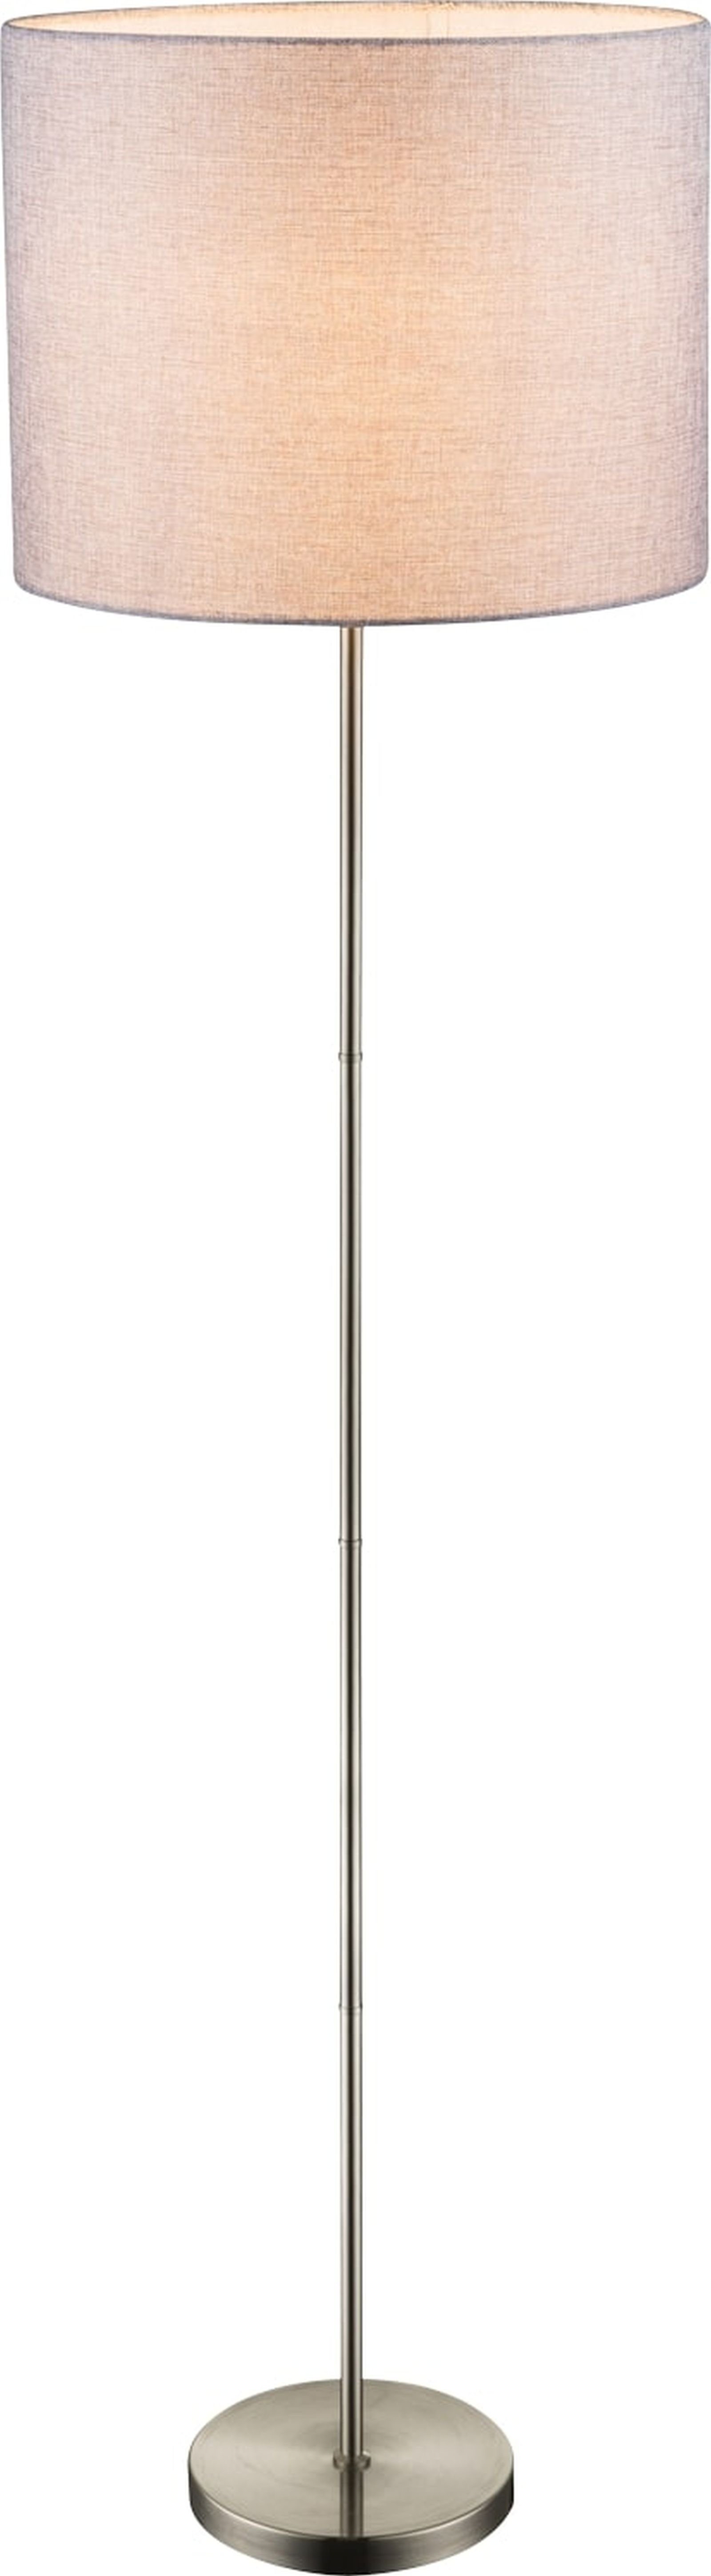 Globo Stehlampe GLOBO Stehleuchte Wohnzimmer Stehlampe Textil Schirm Grau Stoff 40 cm